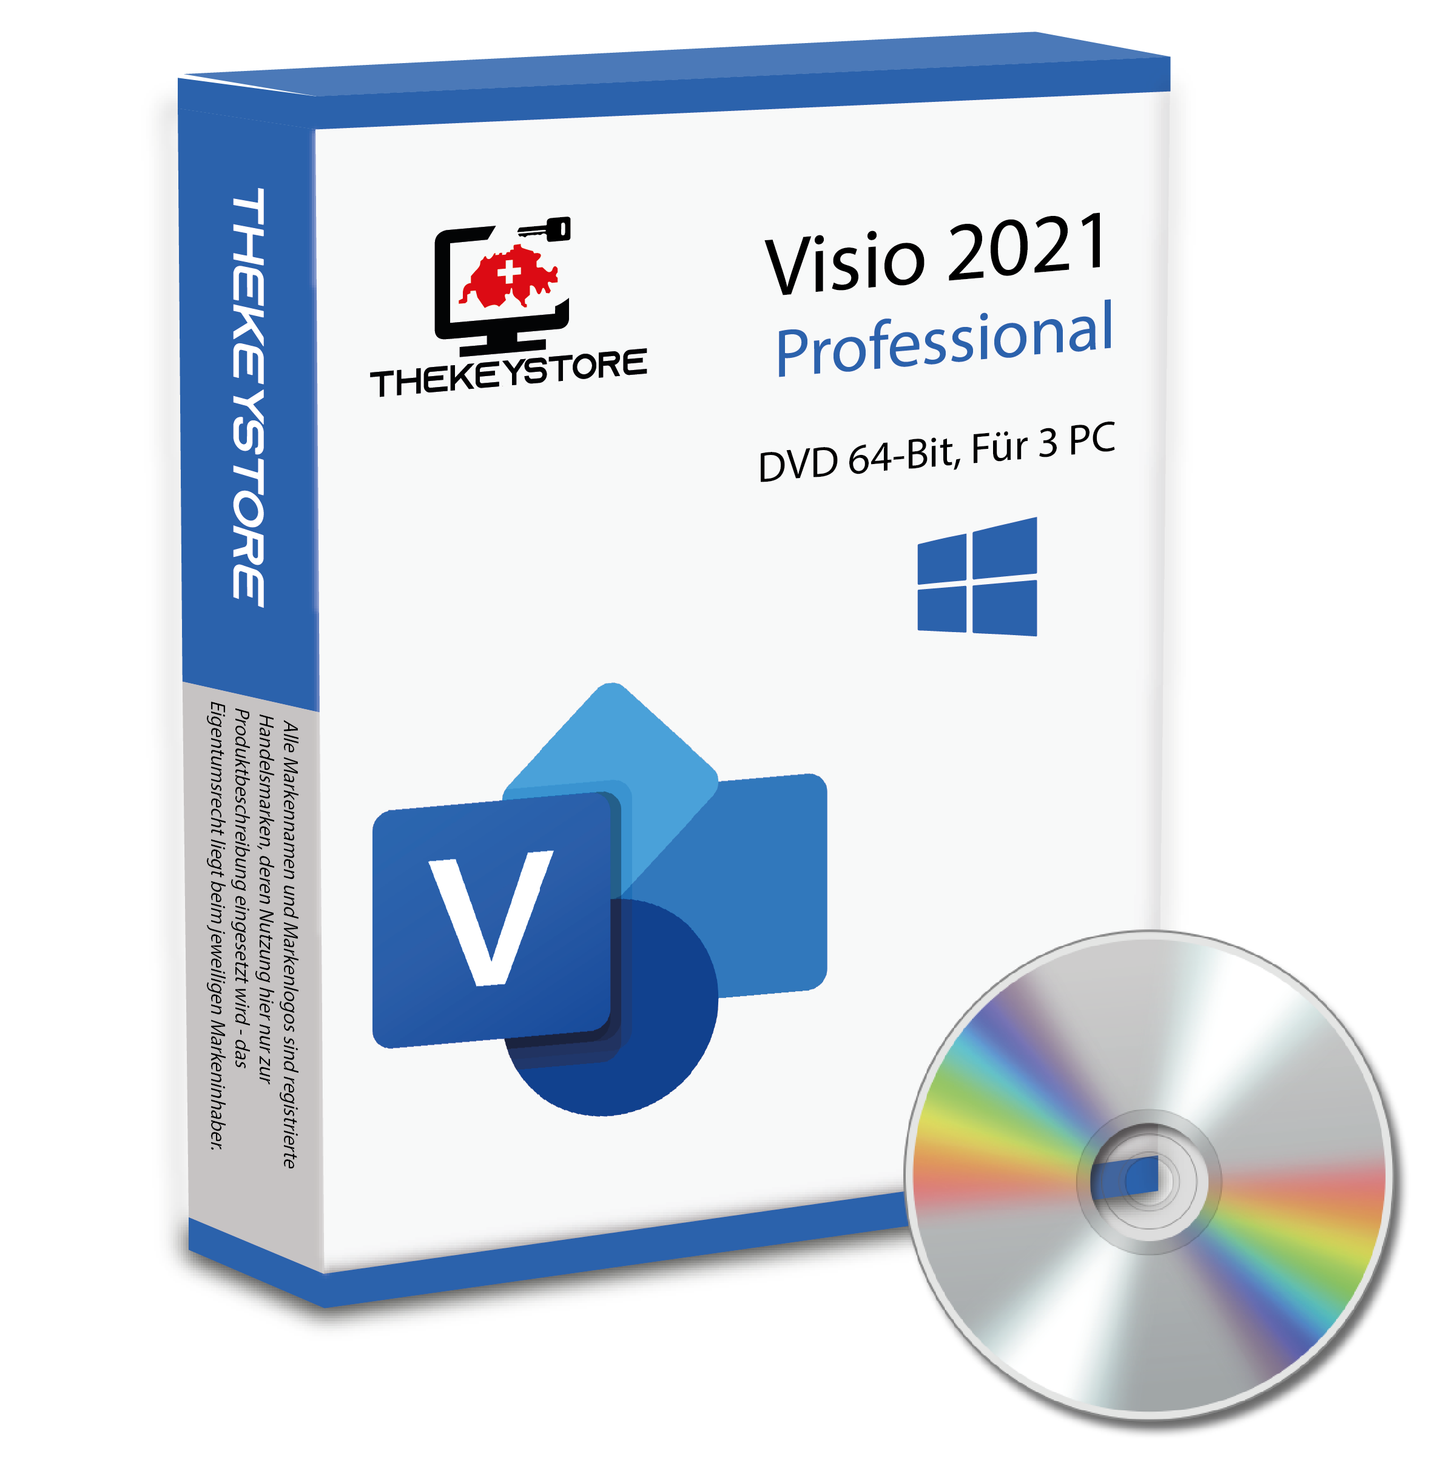 Microsoft Visio 2021 Professional - Für 3 PC - TheKeyStore Schweiz